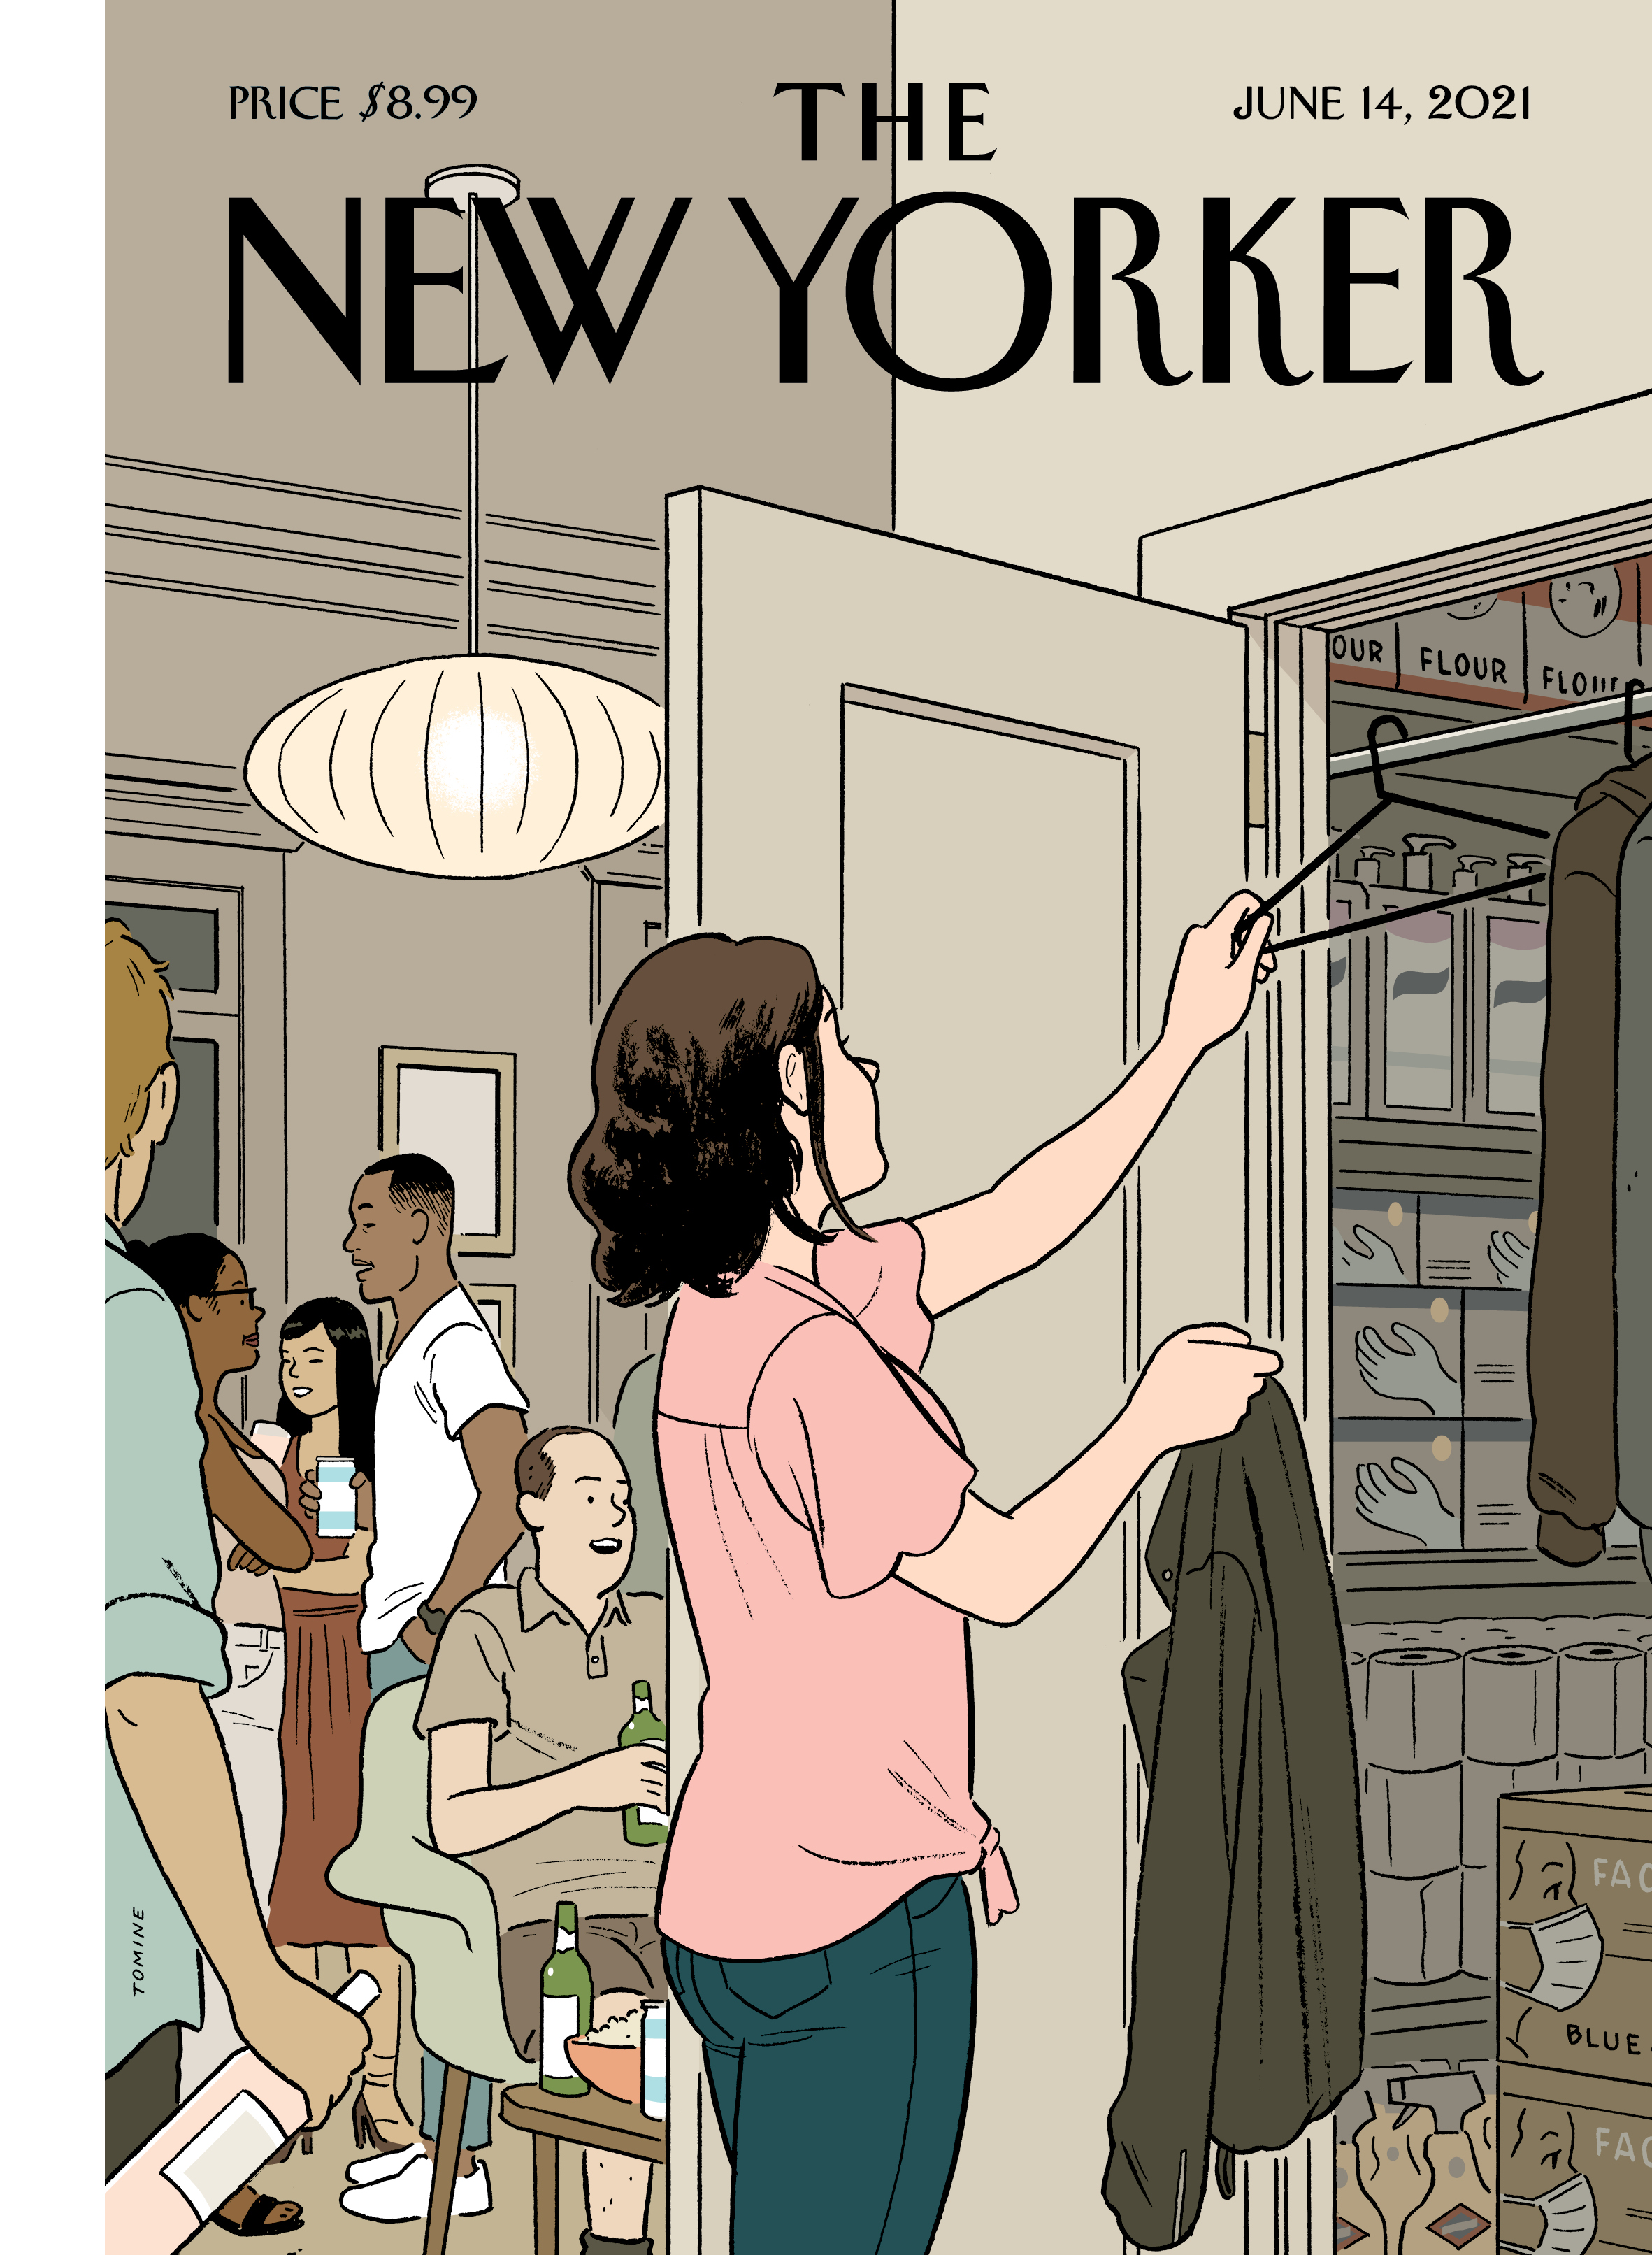 The New Yorker - "Easing Back," June 14, 2021